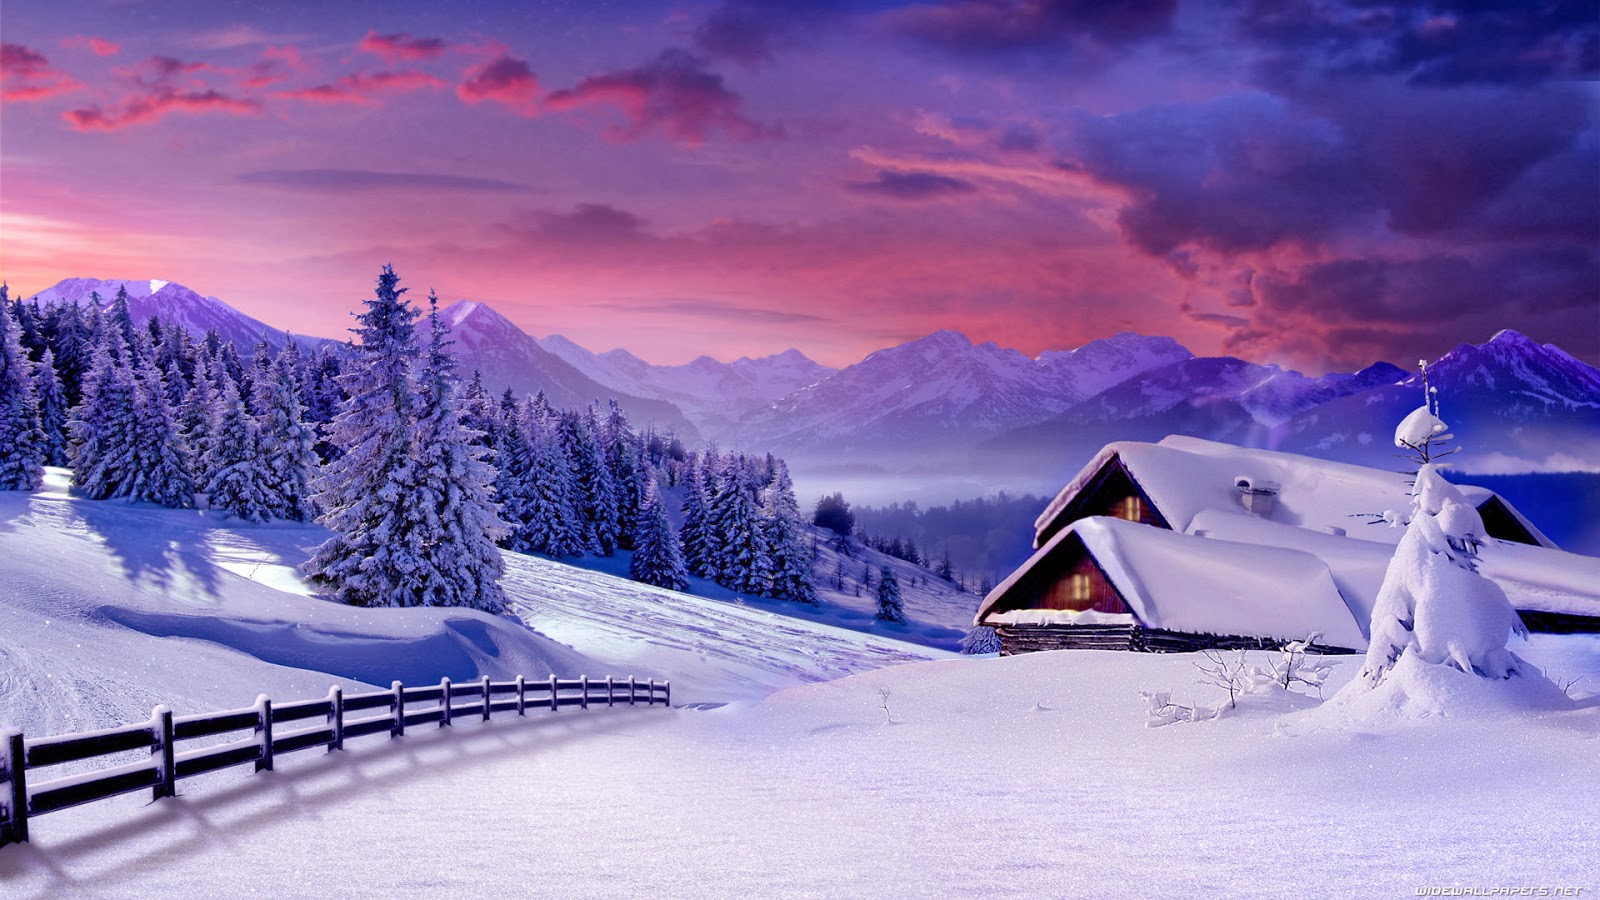 Winter Scenes Wallpapers Backgrounds